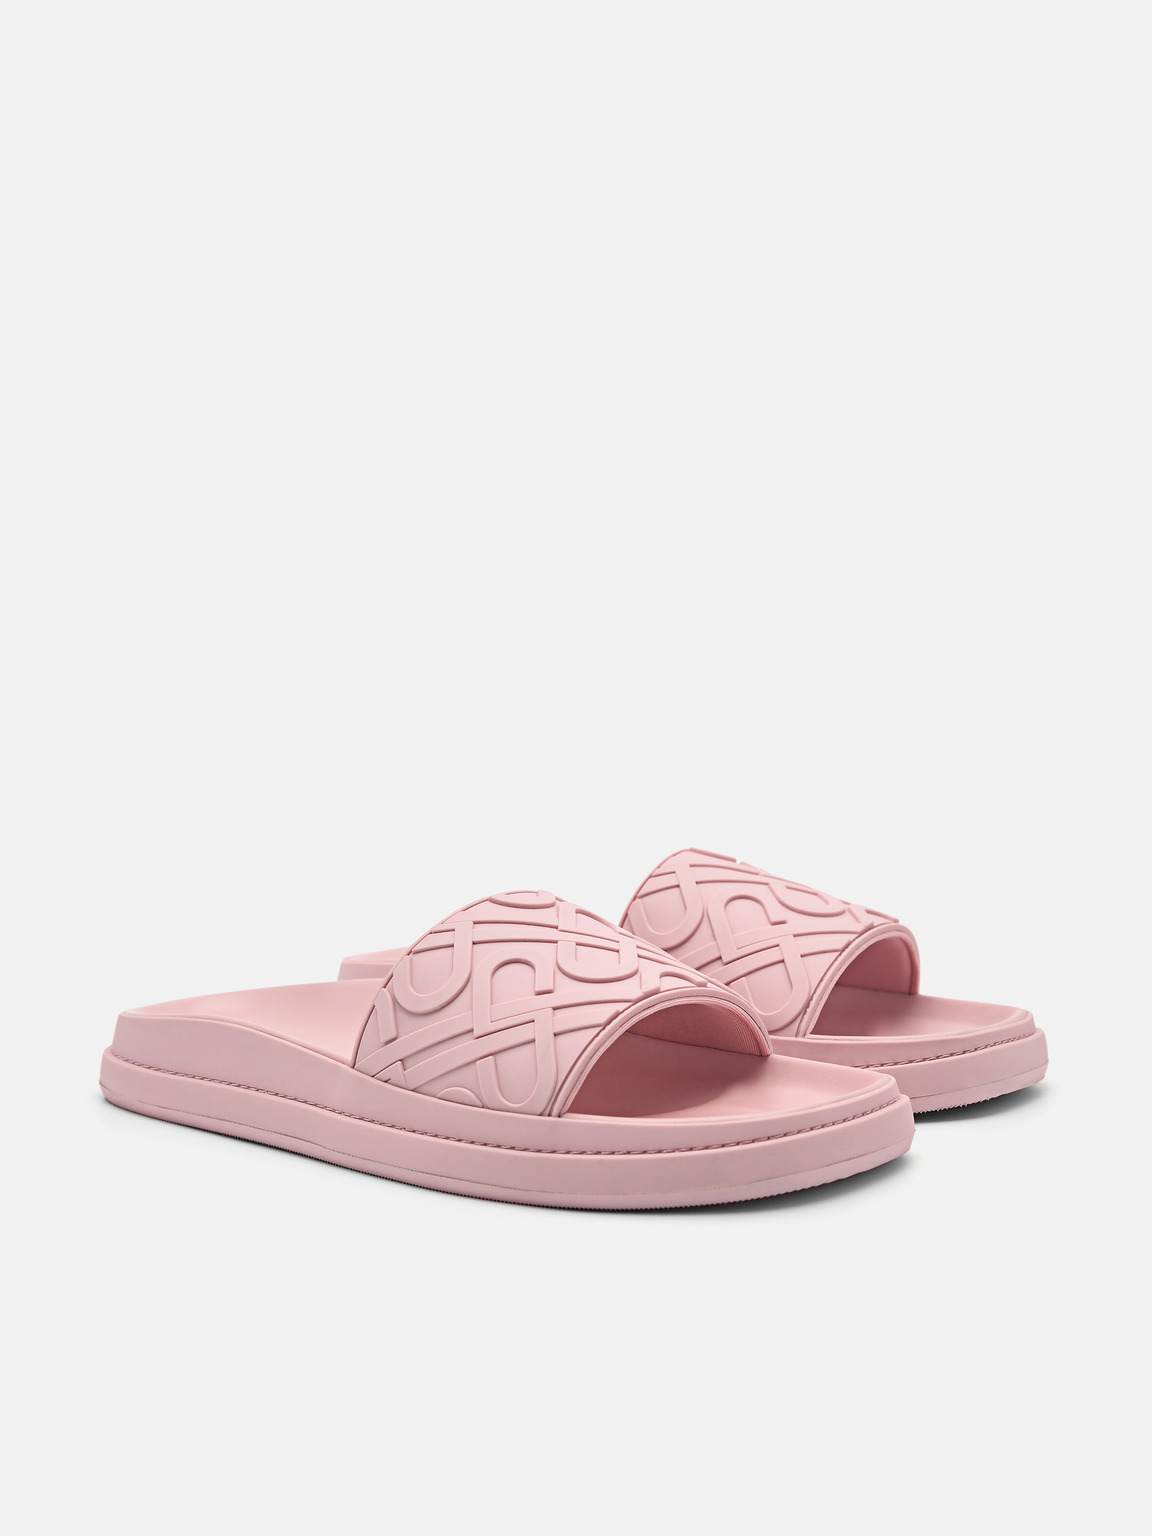 페드로 아이콘 엠보싱 슬라이드 샌들, 핑크